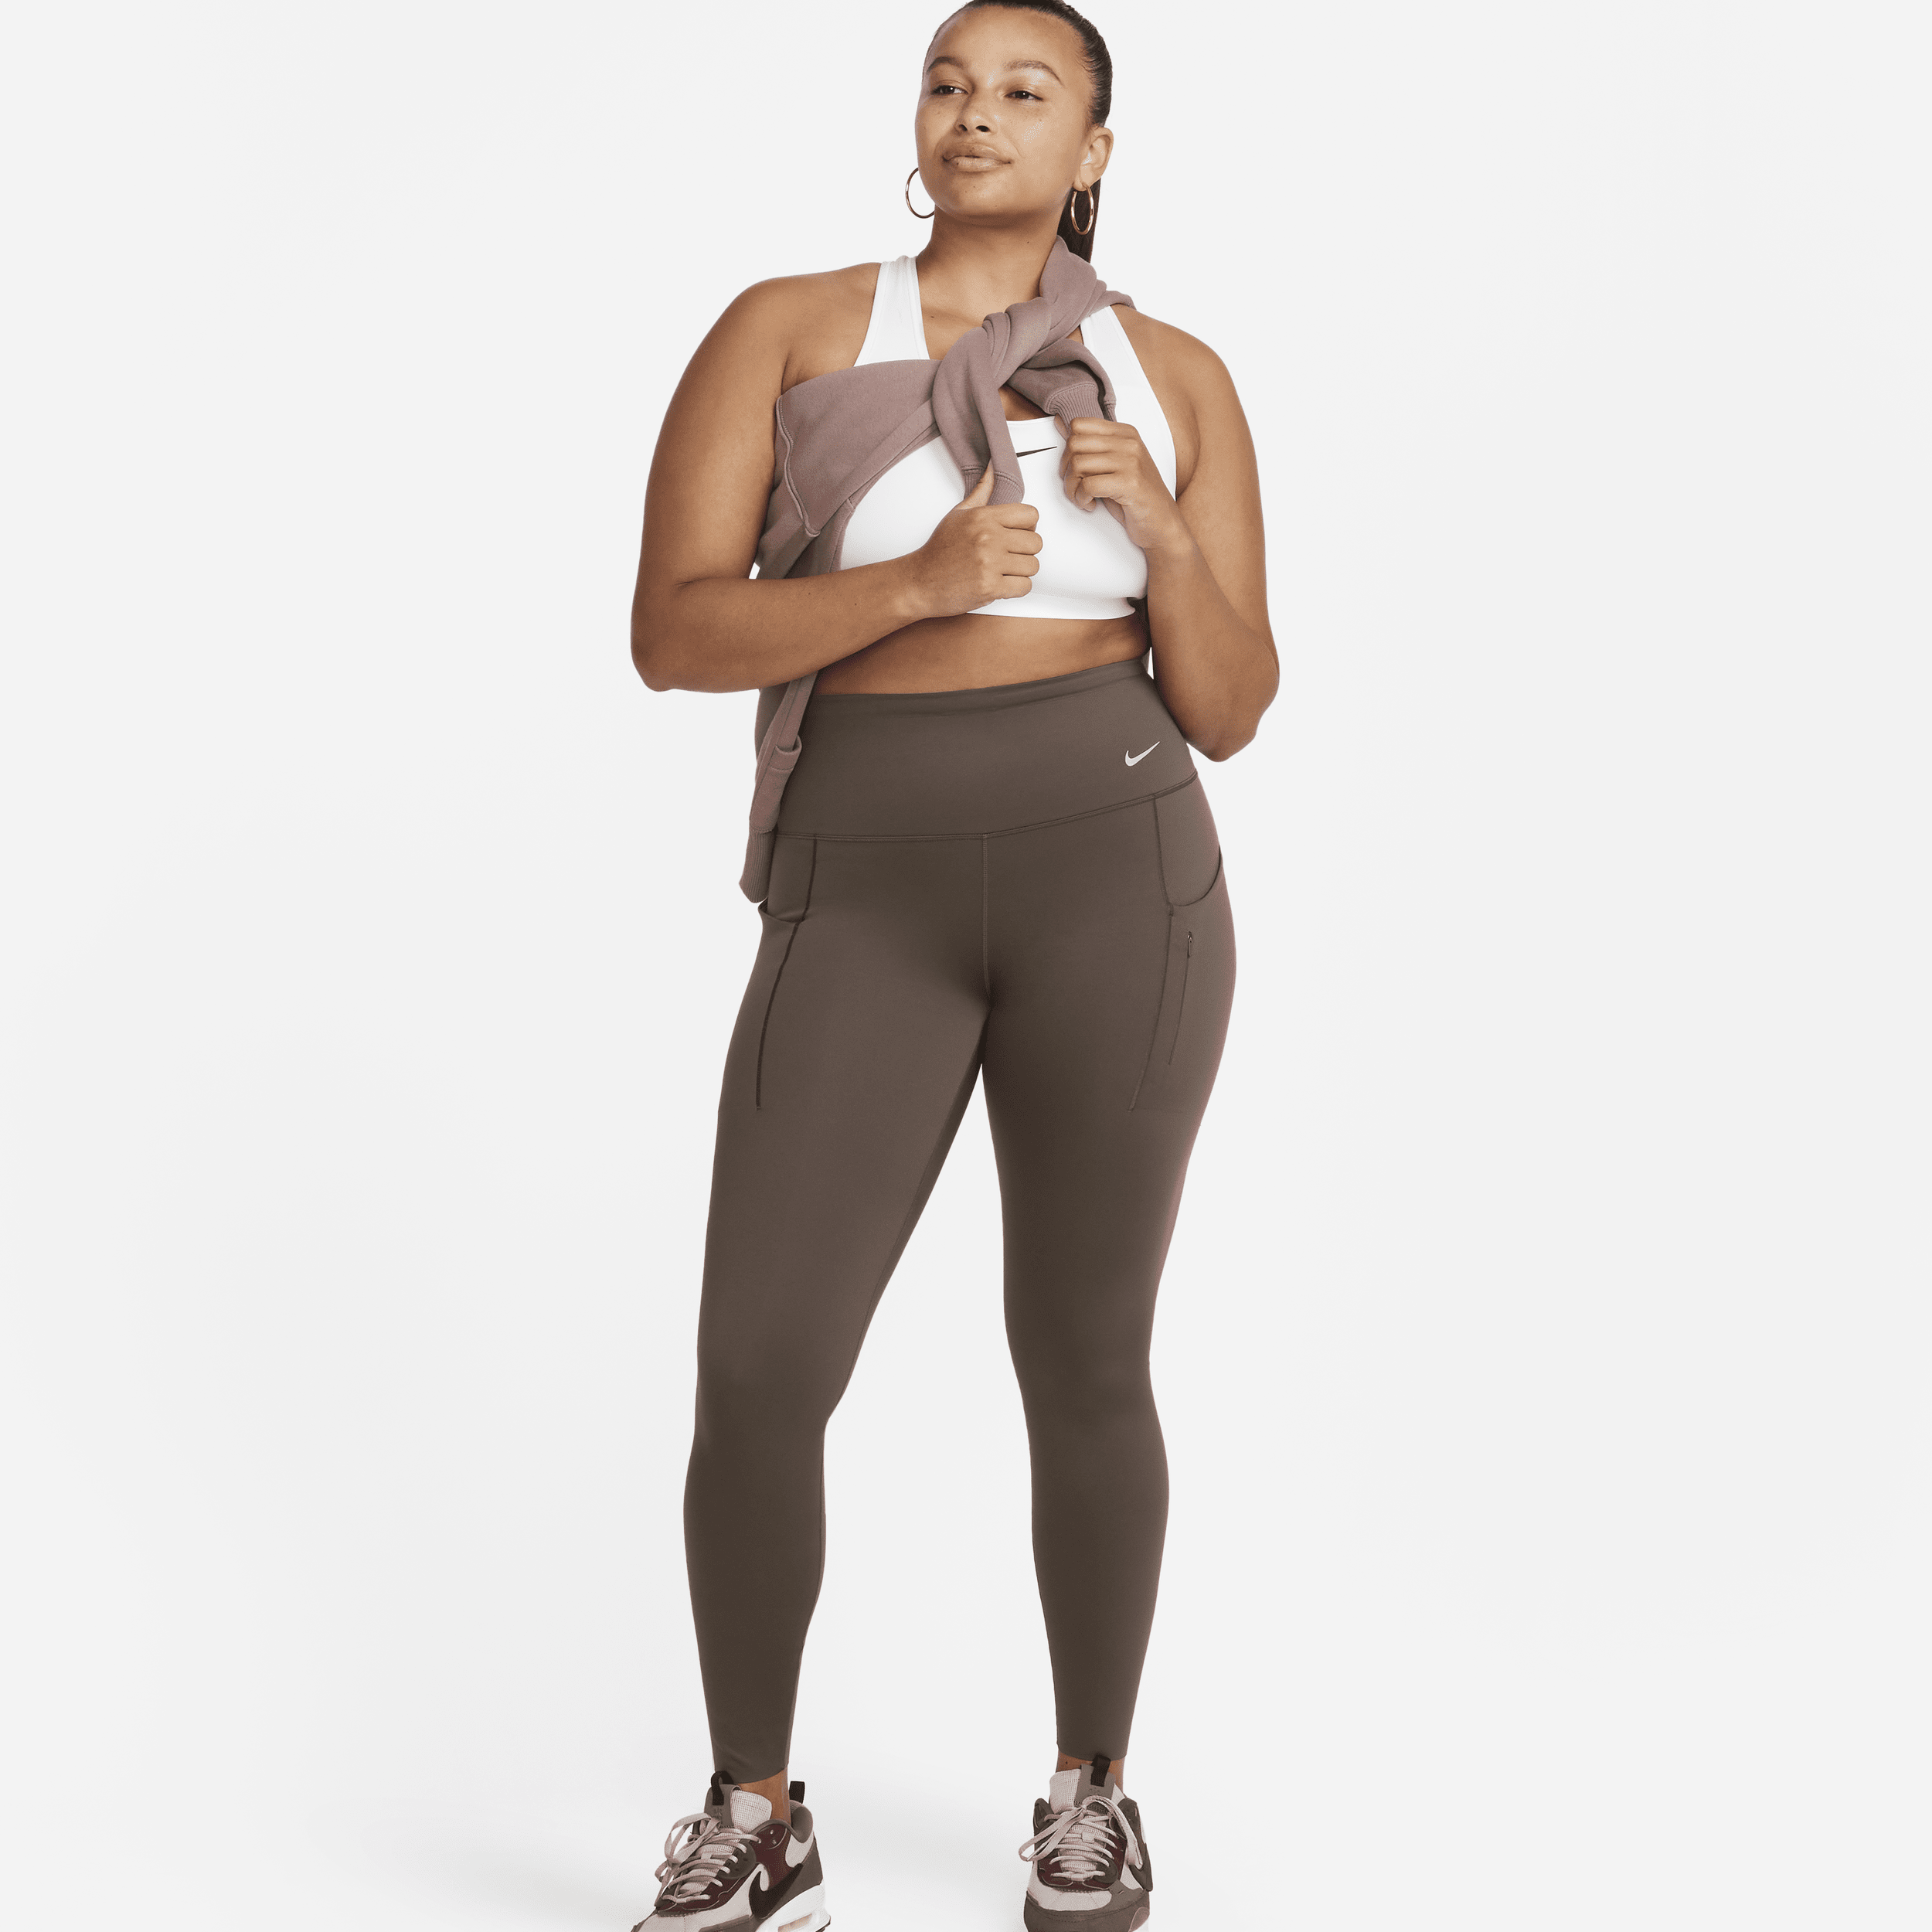 Nike Go Leggings de longitud completa, talle alto y sujeción firme con bolsillos - Mujer - Marrón